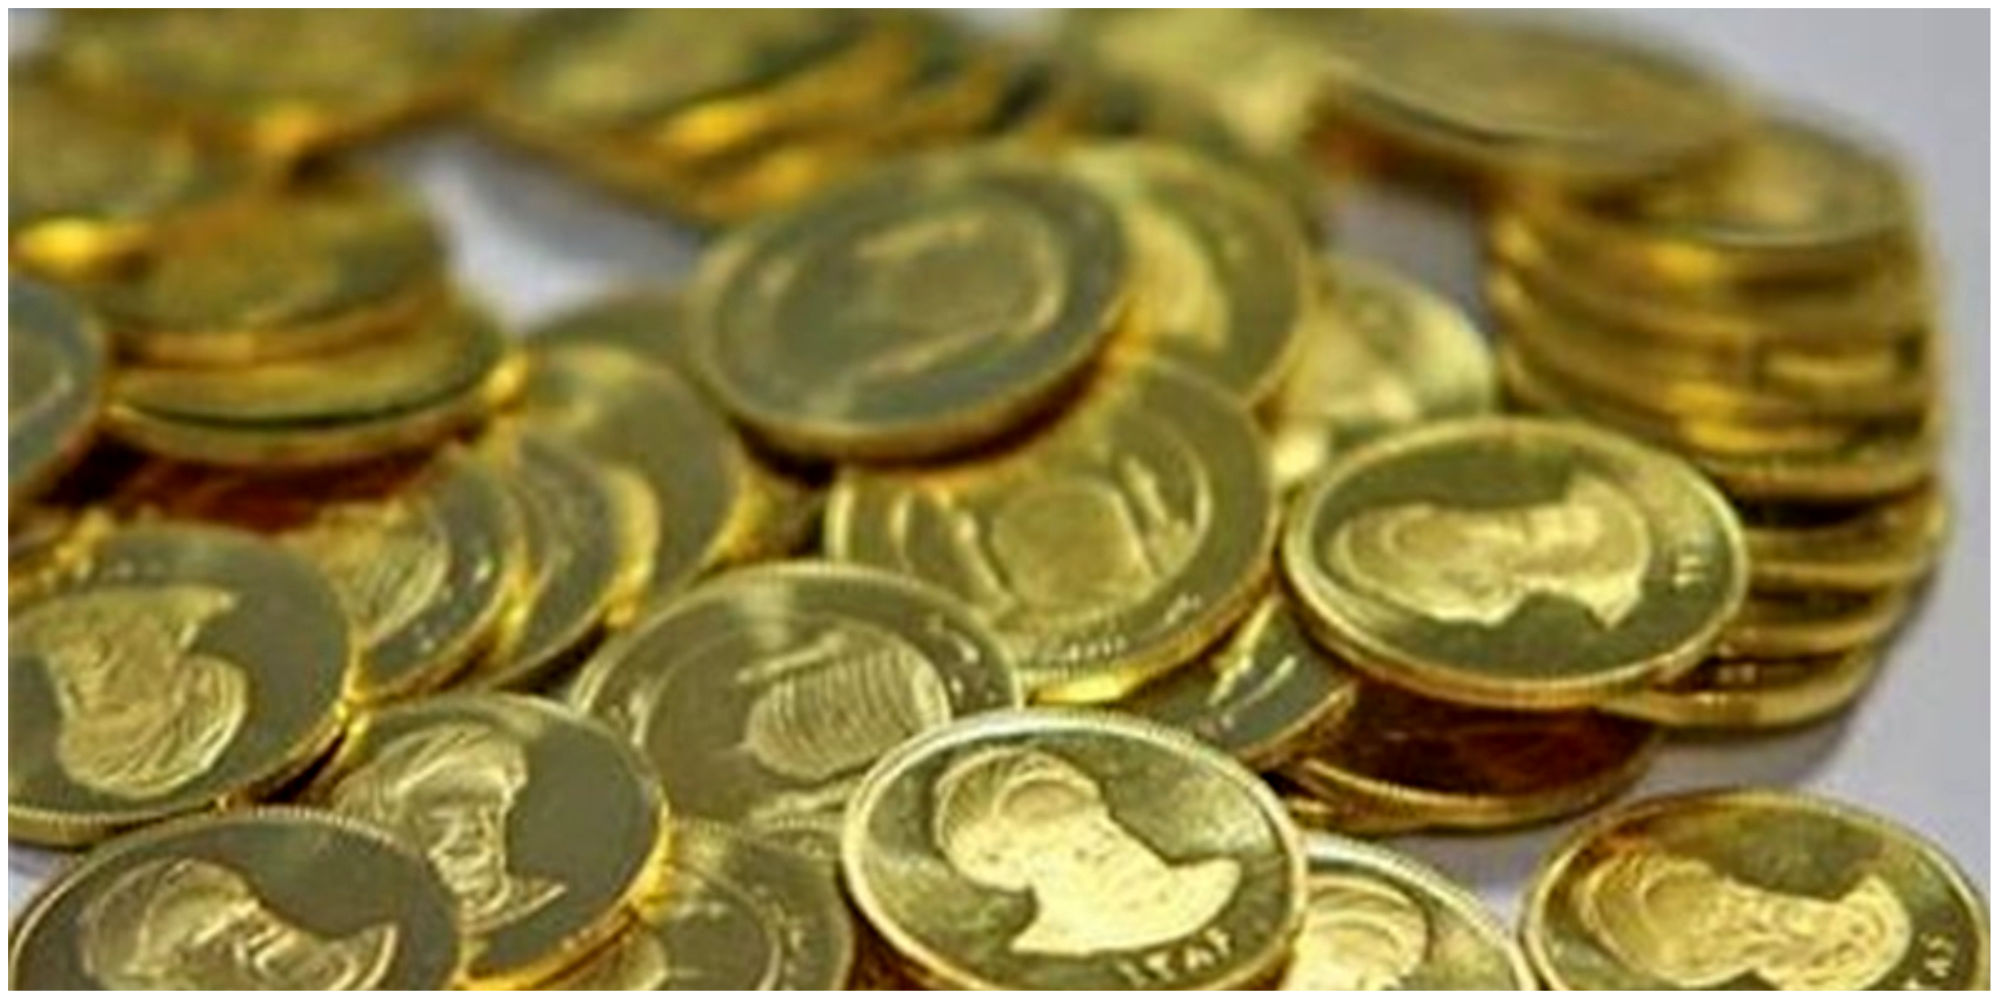 قیمت سکه به زیر 30 میلیون تومان می آید؟ / حباب قابل توجه در بازار سکه